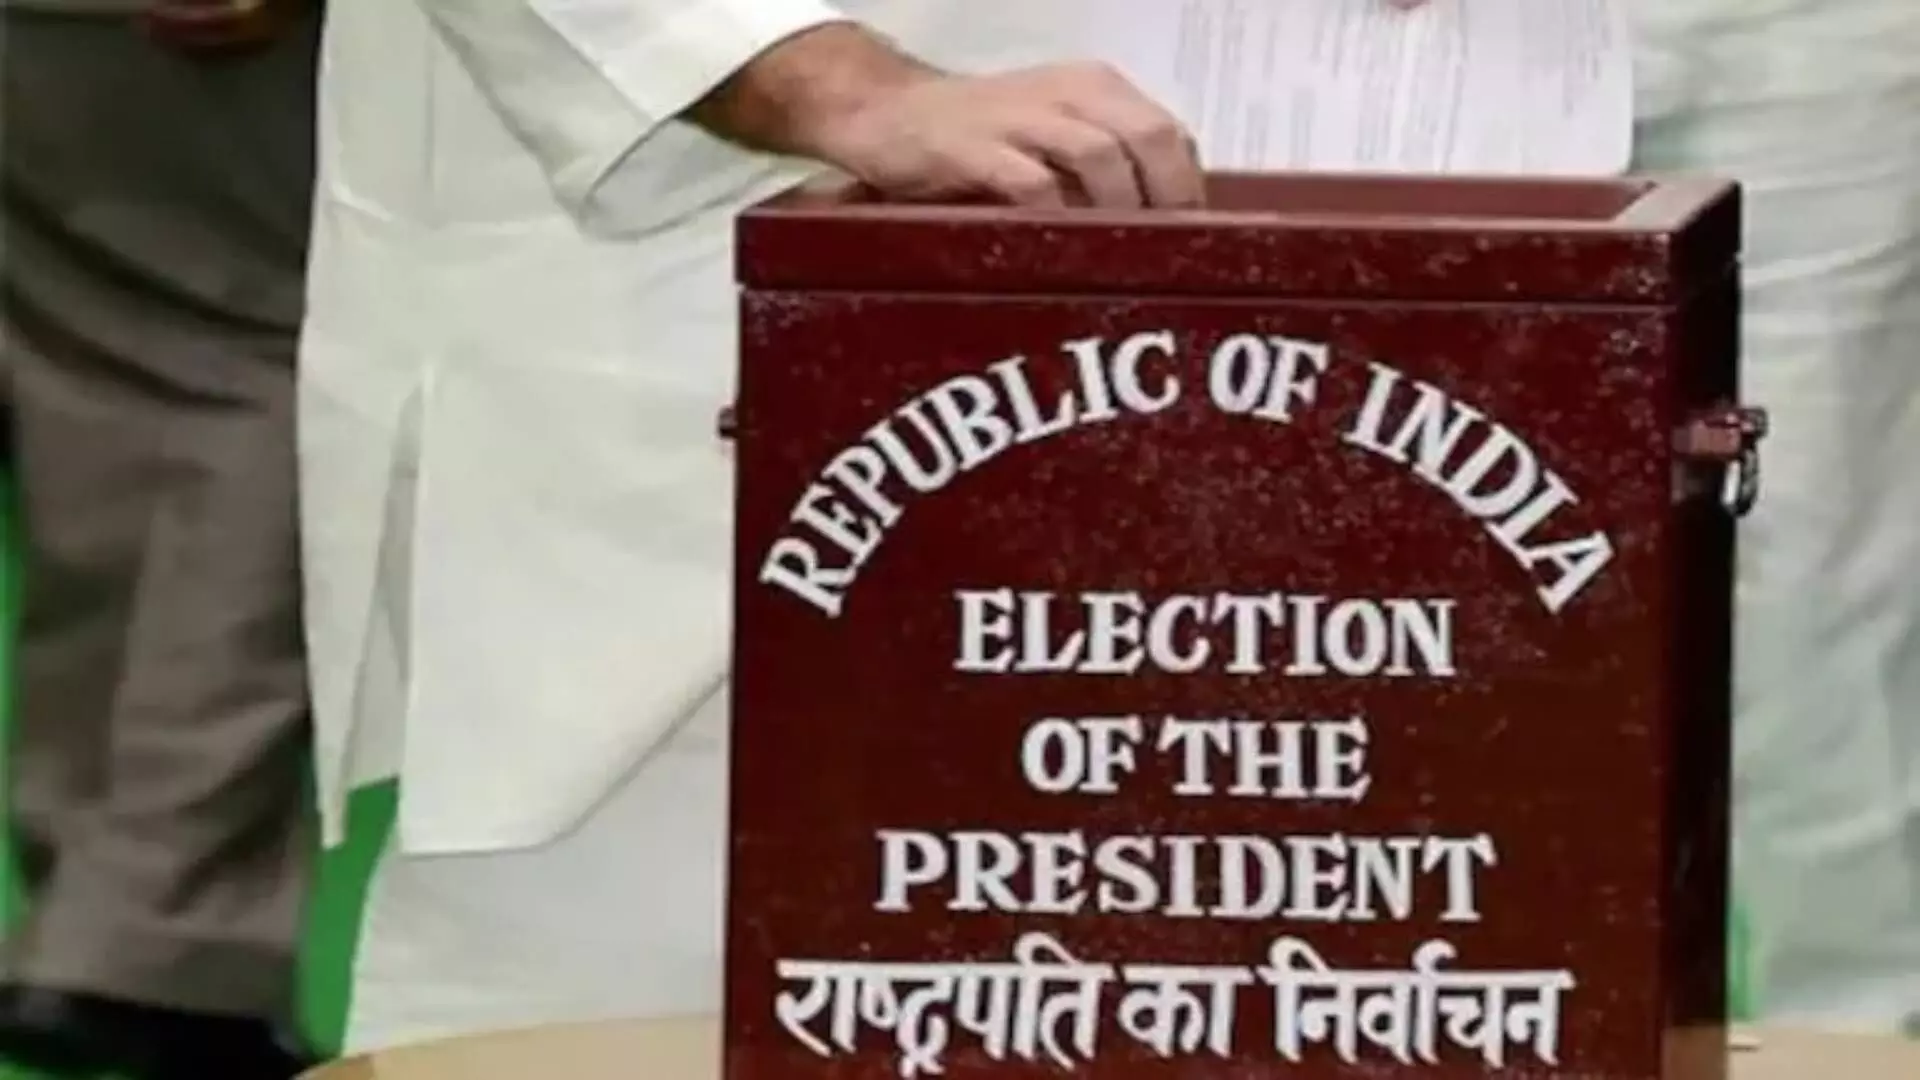 President Election : लालू प्रसाद यादव यांनी भरला राष्ट्रपती पदाचा उमेदवारी अर्ज?